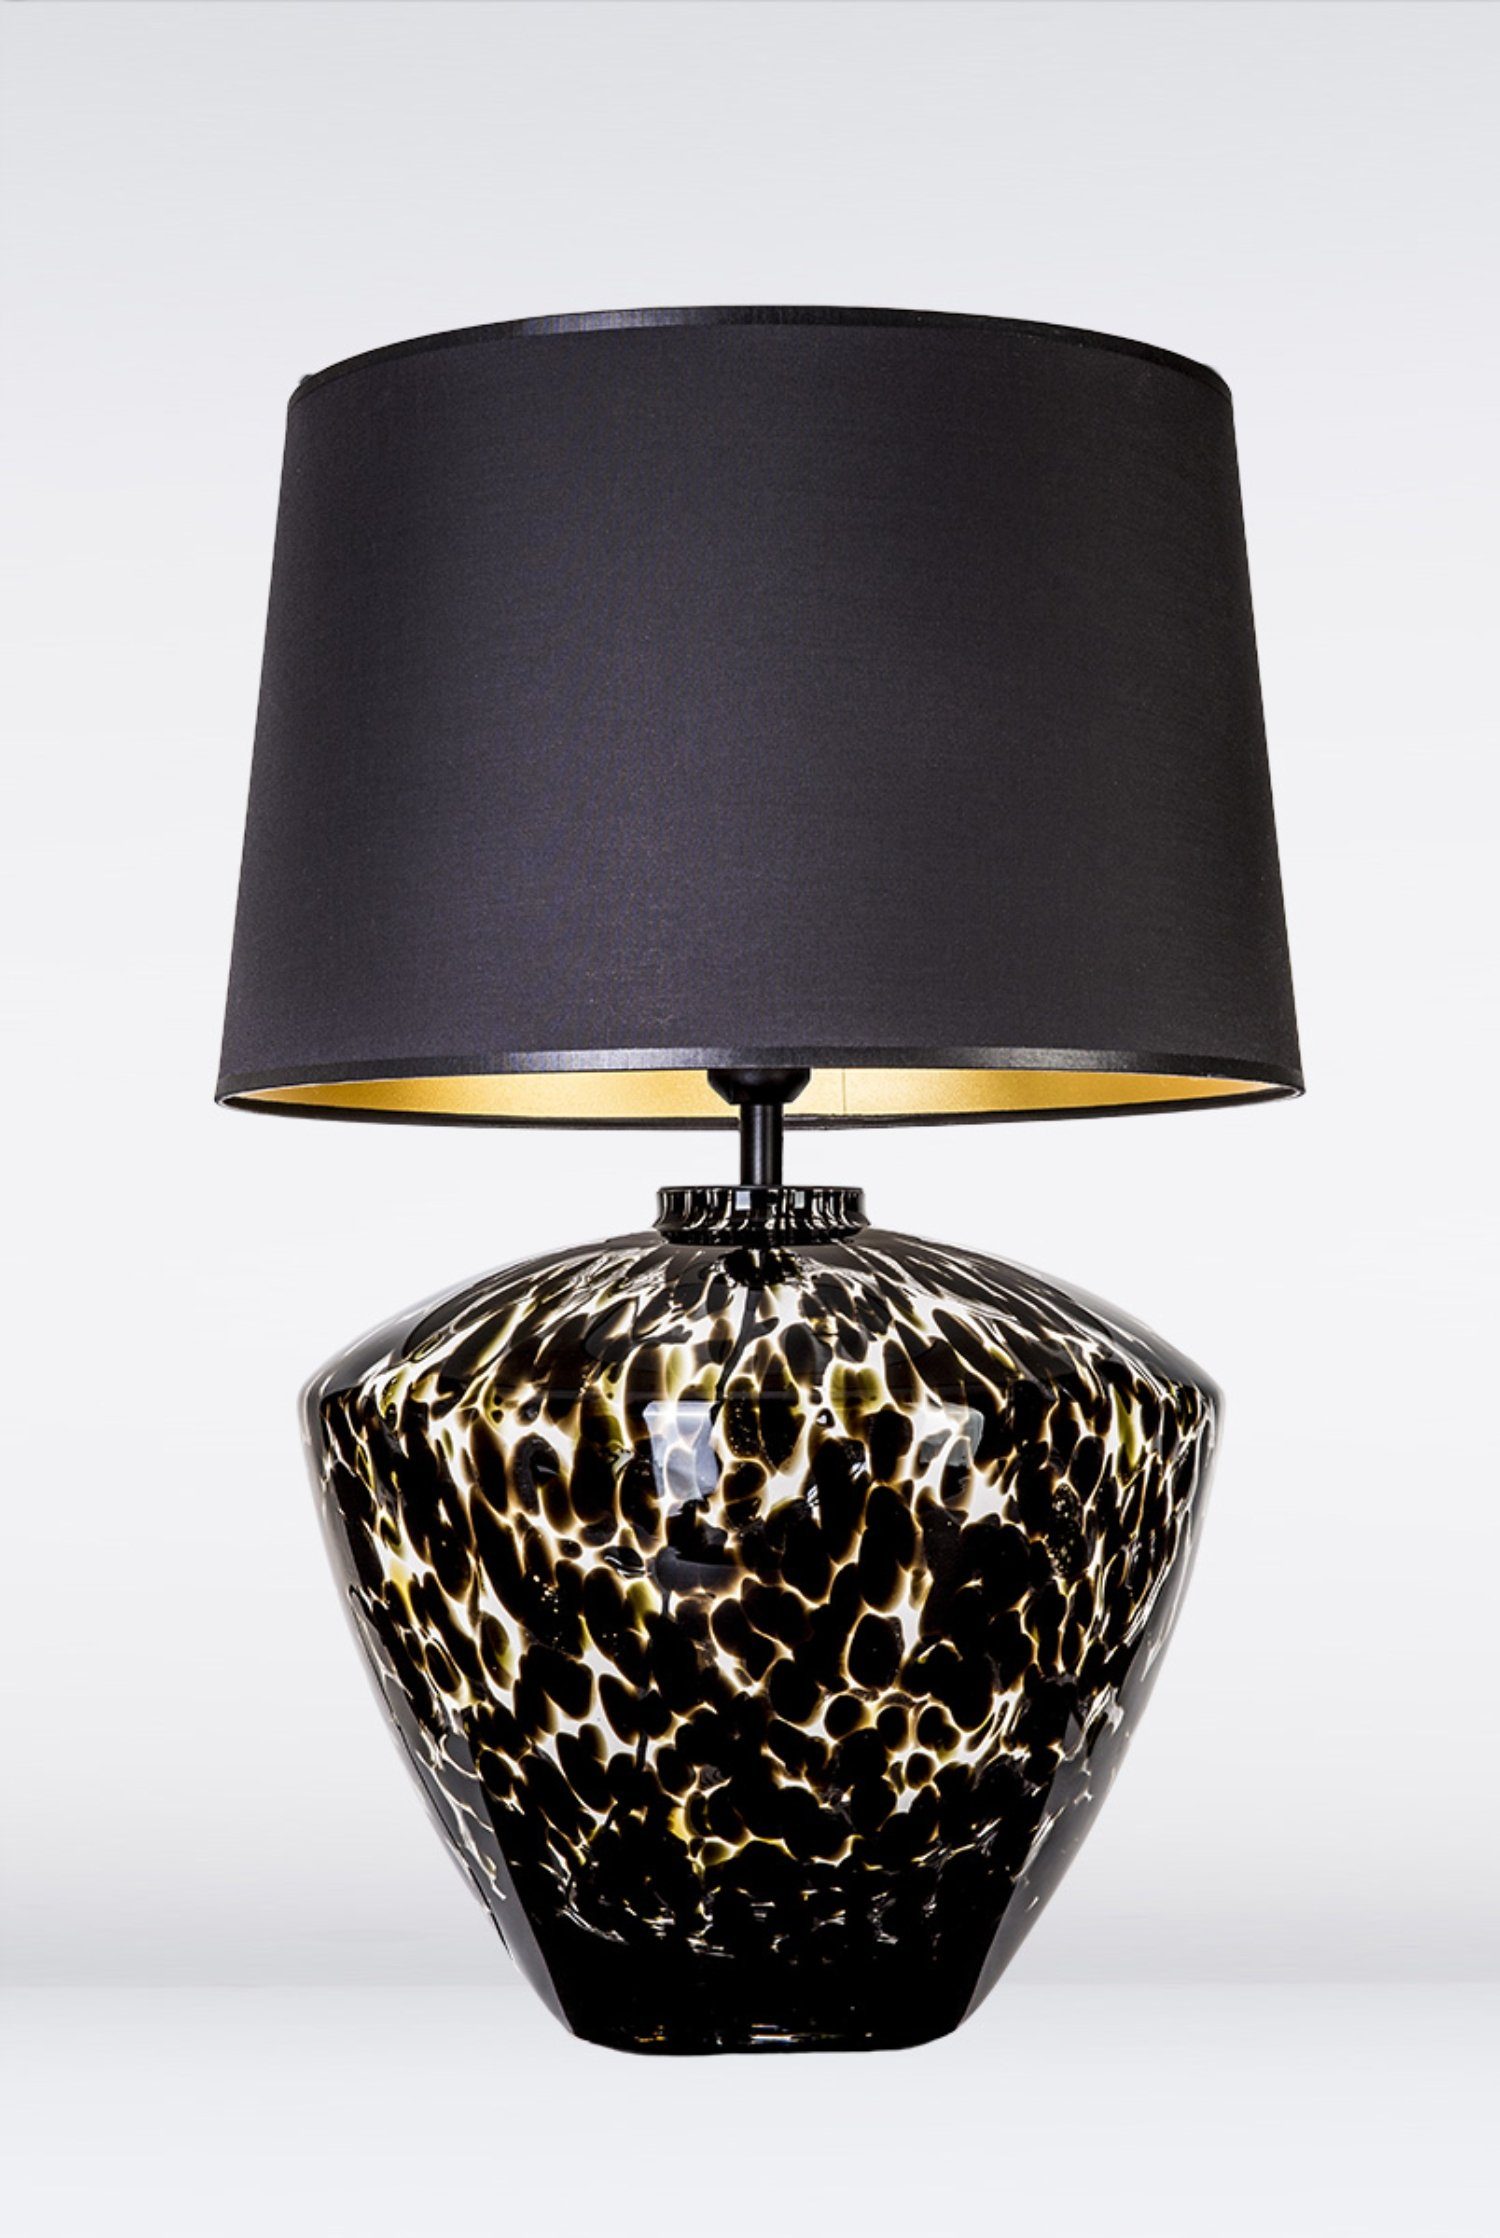 Signature Home Collection Tischleuchte Tischlampe Glas gefleckt mit  Lampenschirm schwarz, ohne Leuchtmittel, Warmweiß, Glaslampe mundgeblasenes  Glas